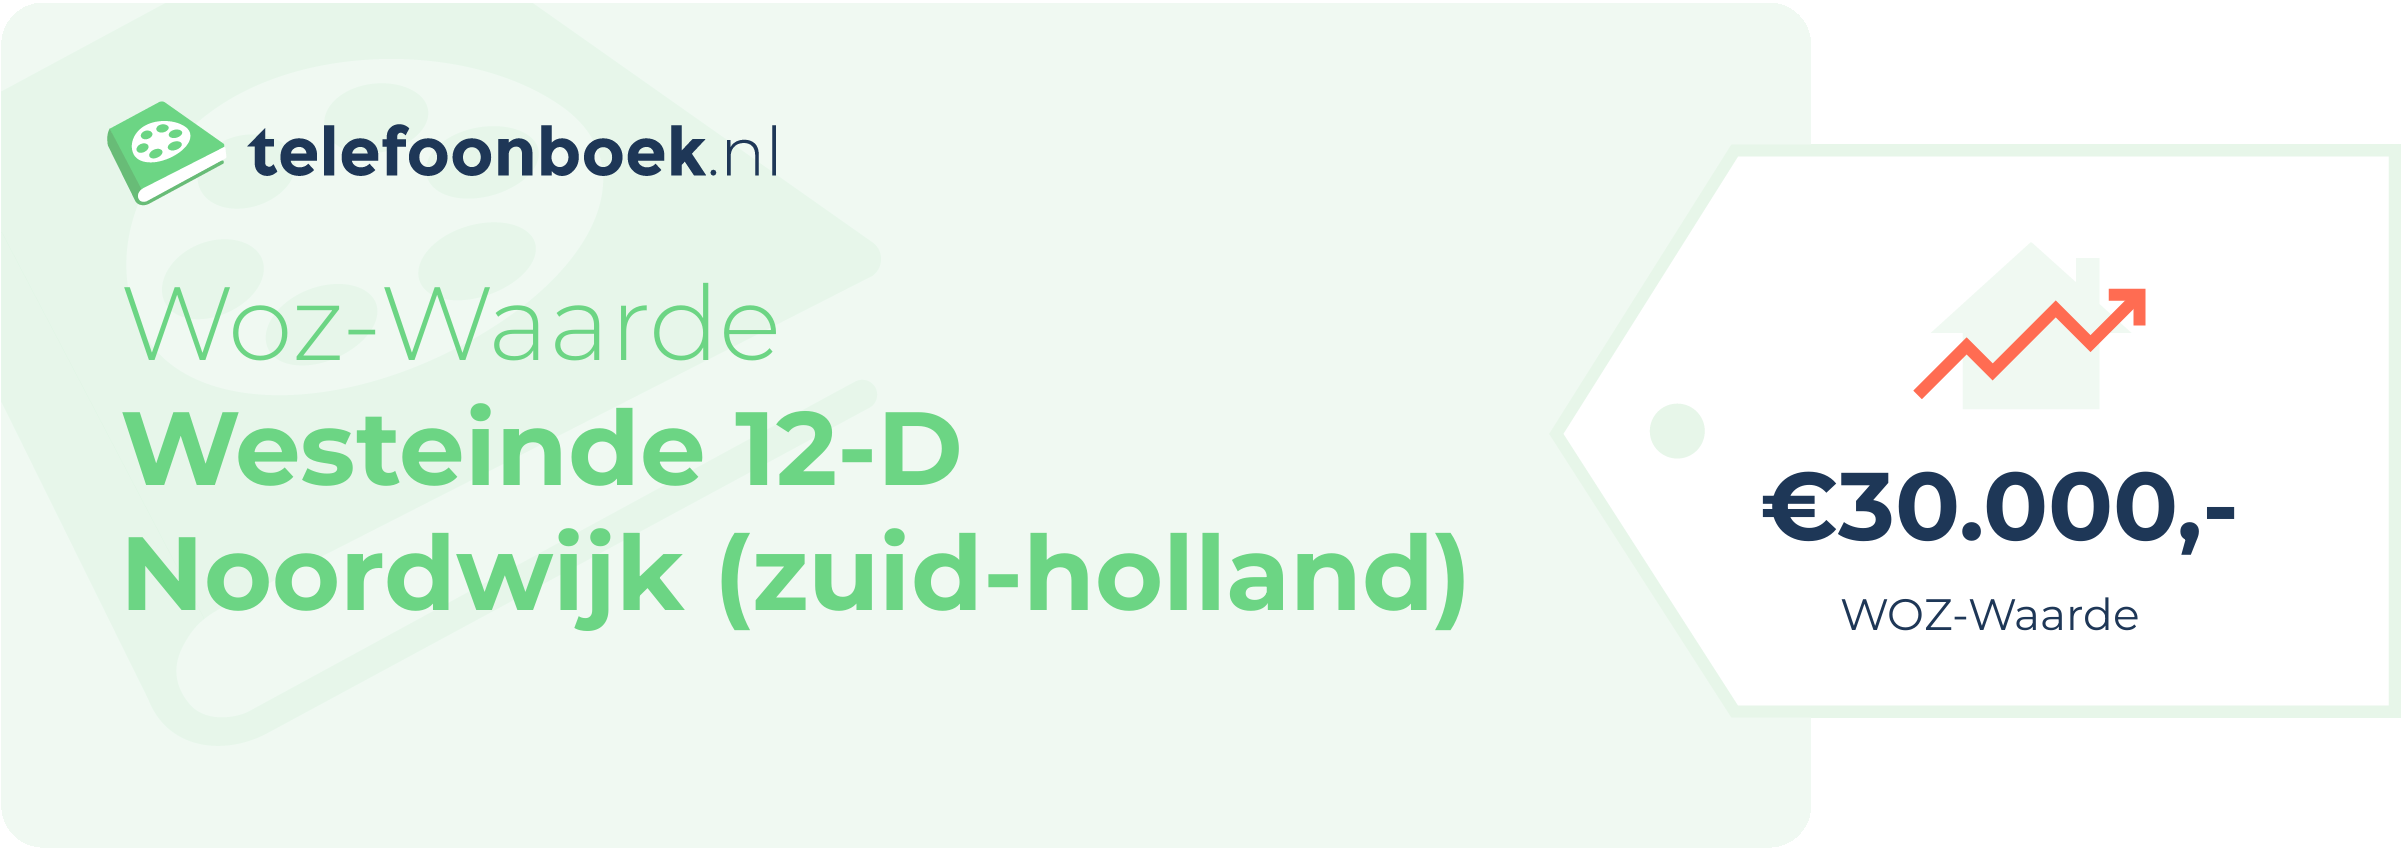 WOZ-waarde Westeinde 12-D Noordwijk (Zuid-Holland)